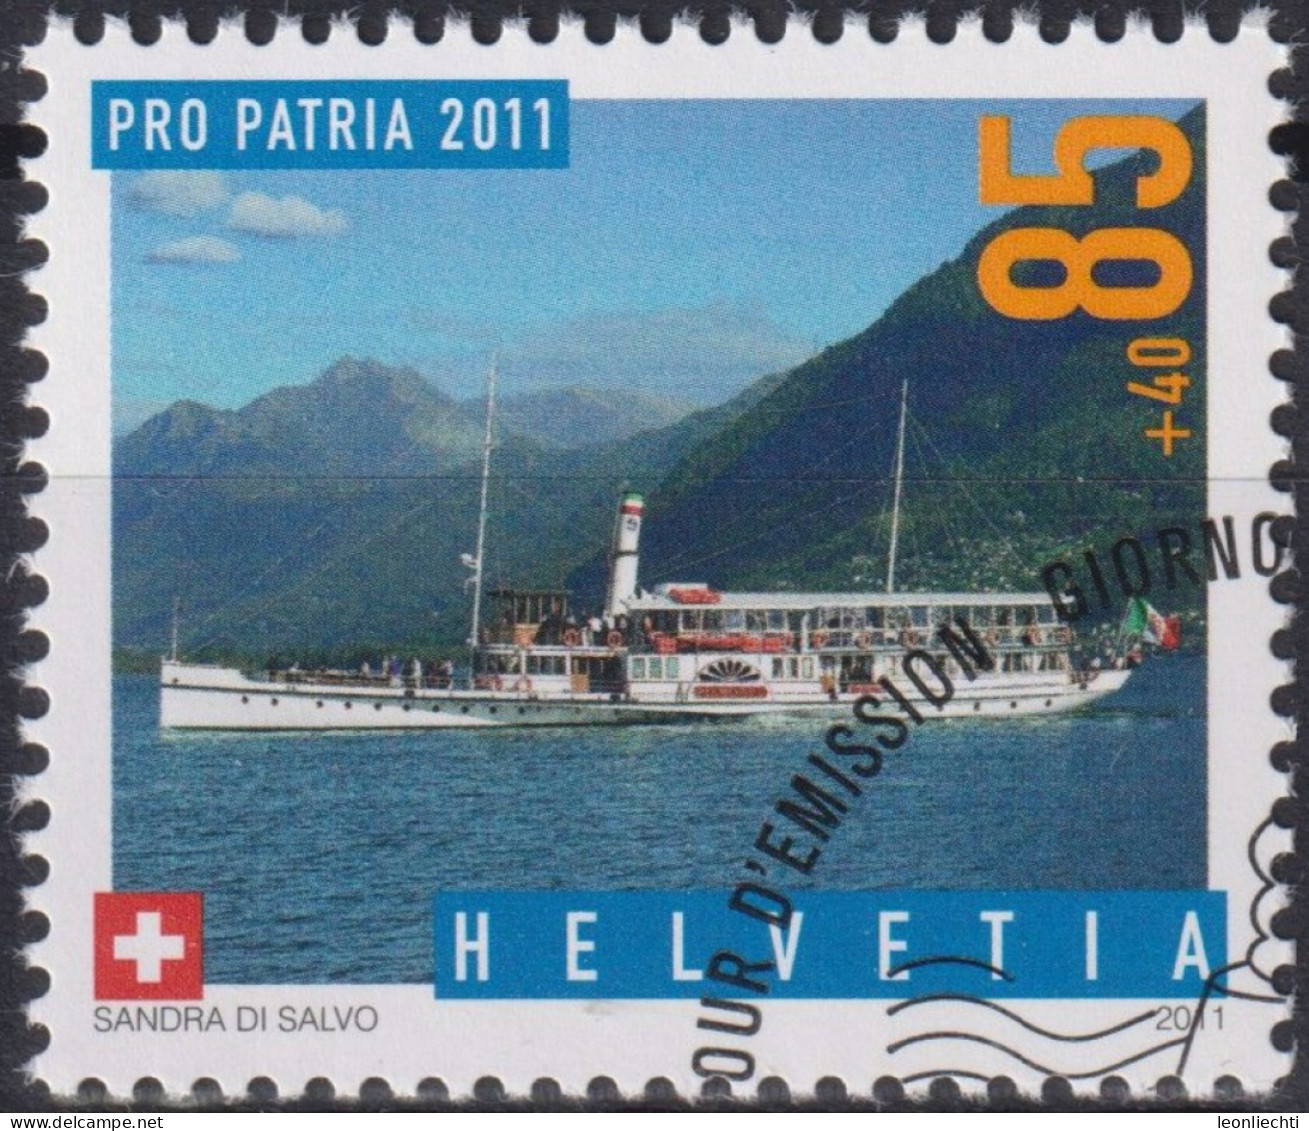 2011 Schweiz Pro Patria, Dampfschiff, Piemonte ⵙ Zum:CH B313, Mi:CH 2204, Yt:CH 2125 - Gebraucht